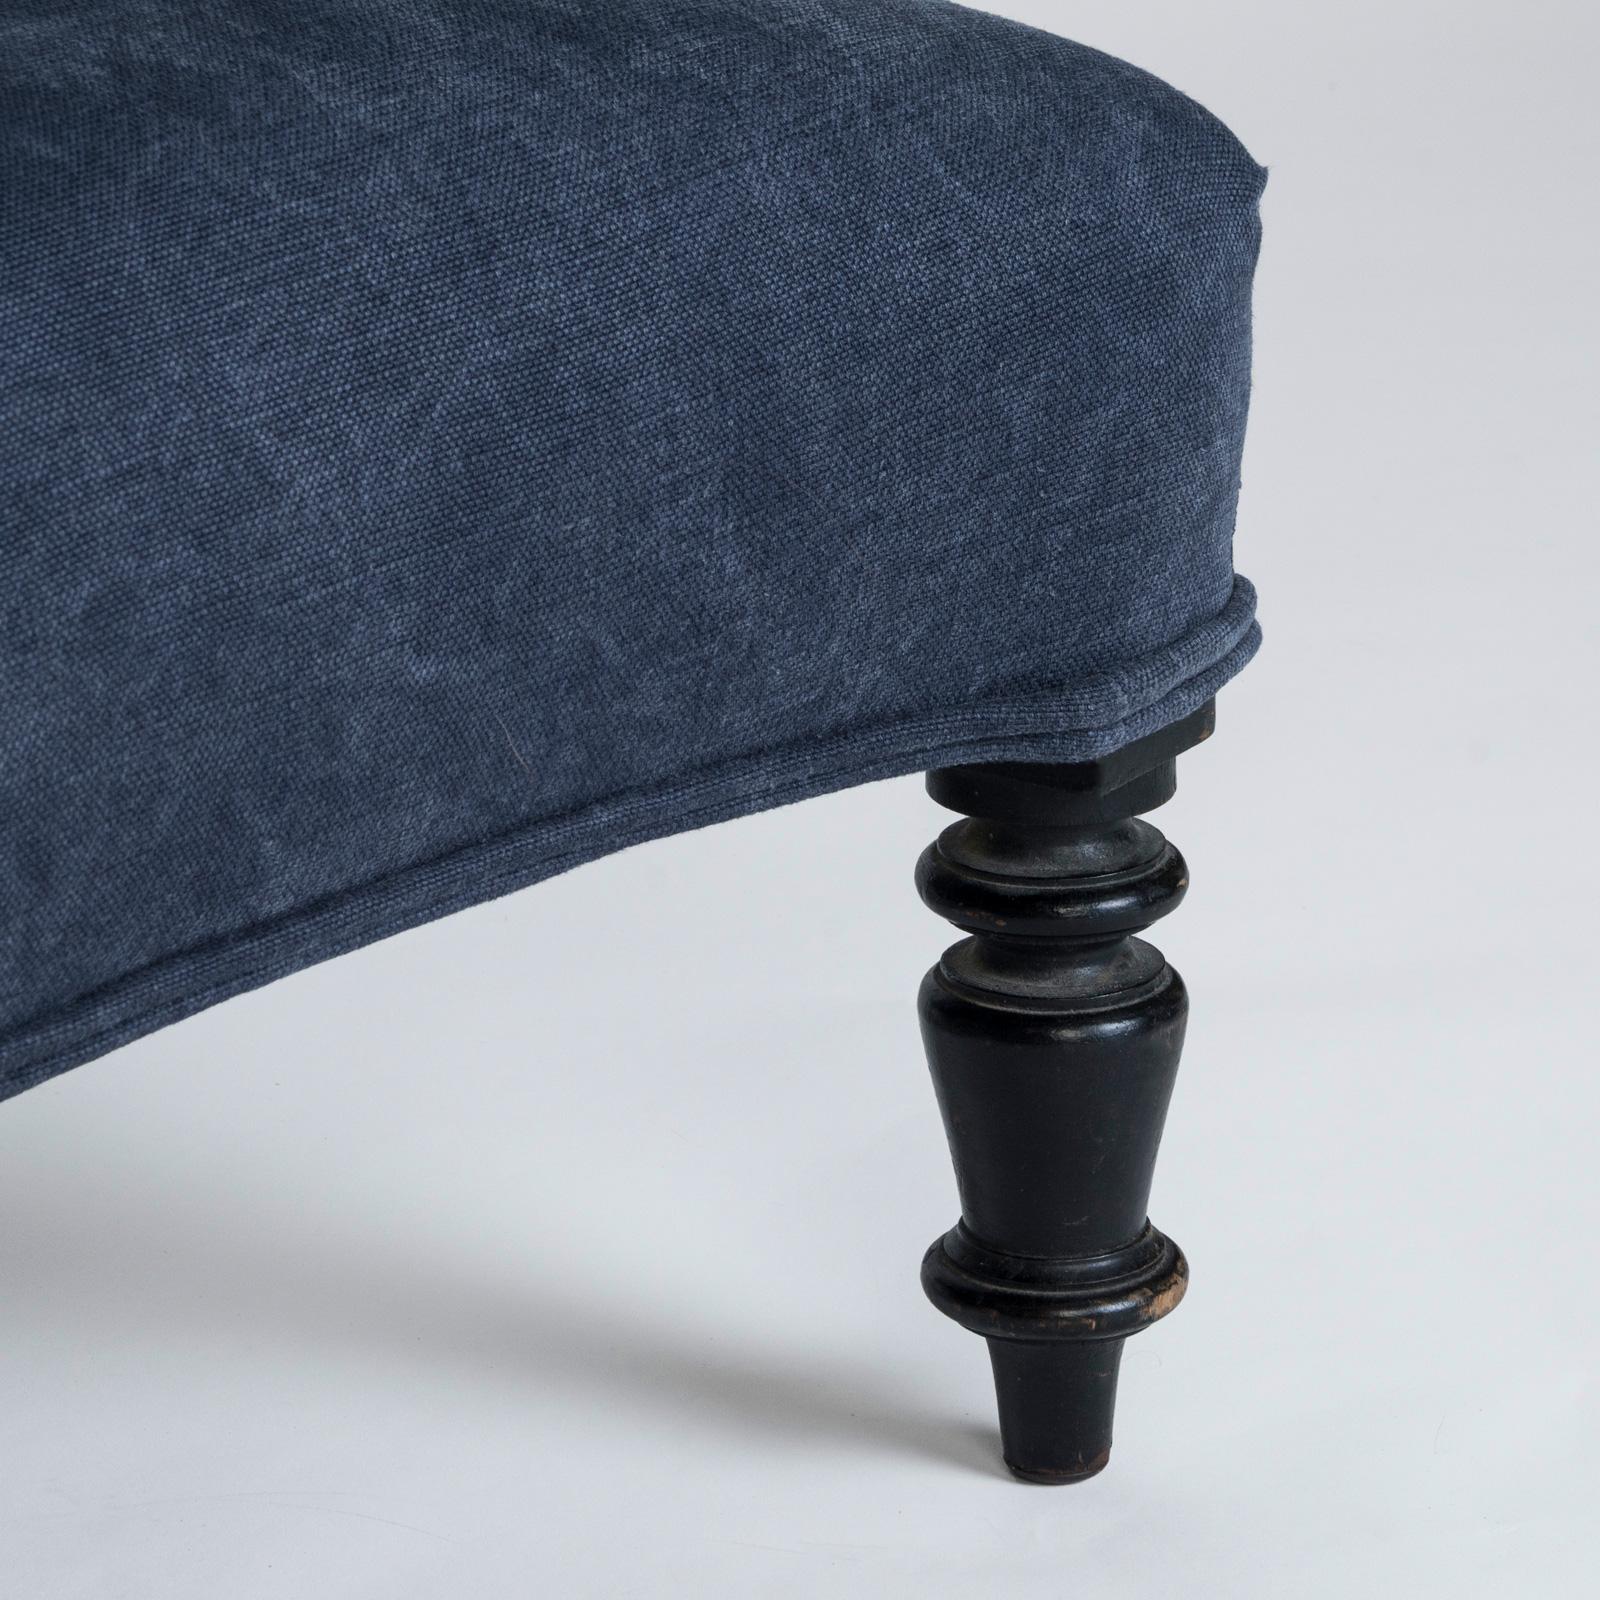 Raffinierter Hocker oder Fußbank im Stil von Napoleon III. aus dem 19. Jahrhundert mit einem charakteristischen blauen Leinenbezug.

Dieser exquisite Hocker ist eine bequeme Ergänzung zu jedem Sofa und kann bei Bedarf als zusätzliche Sitzgelegenheit